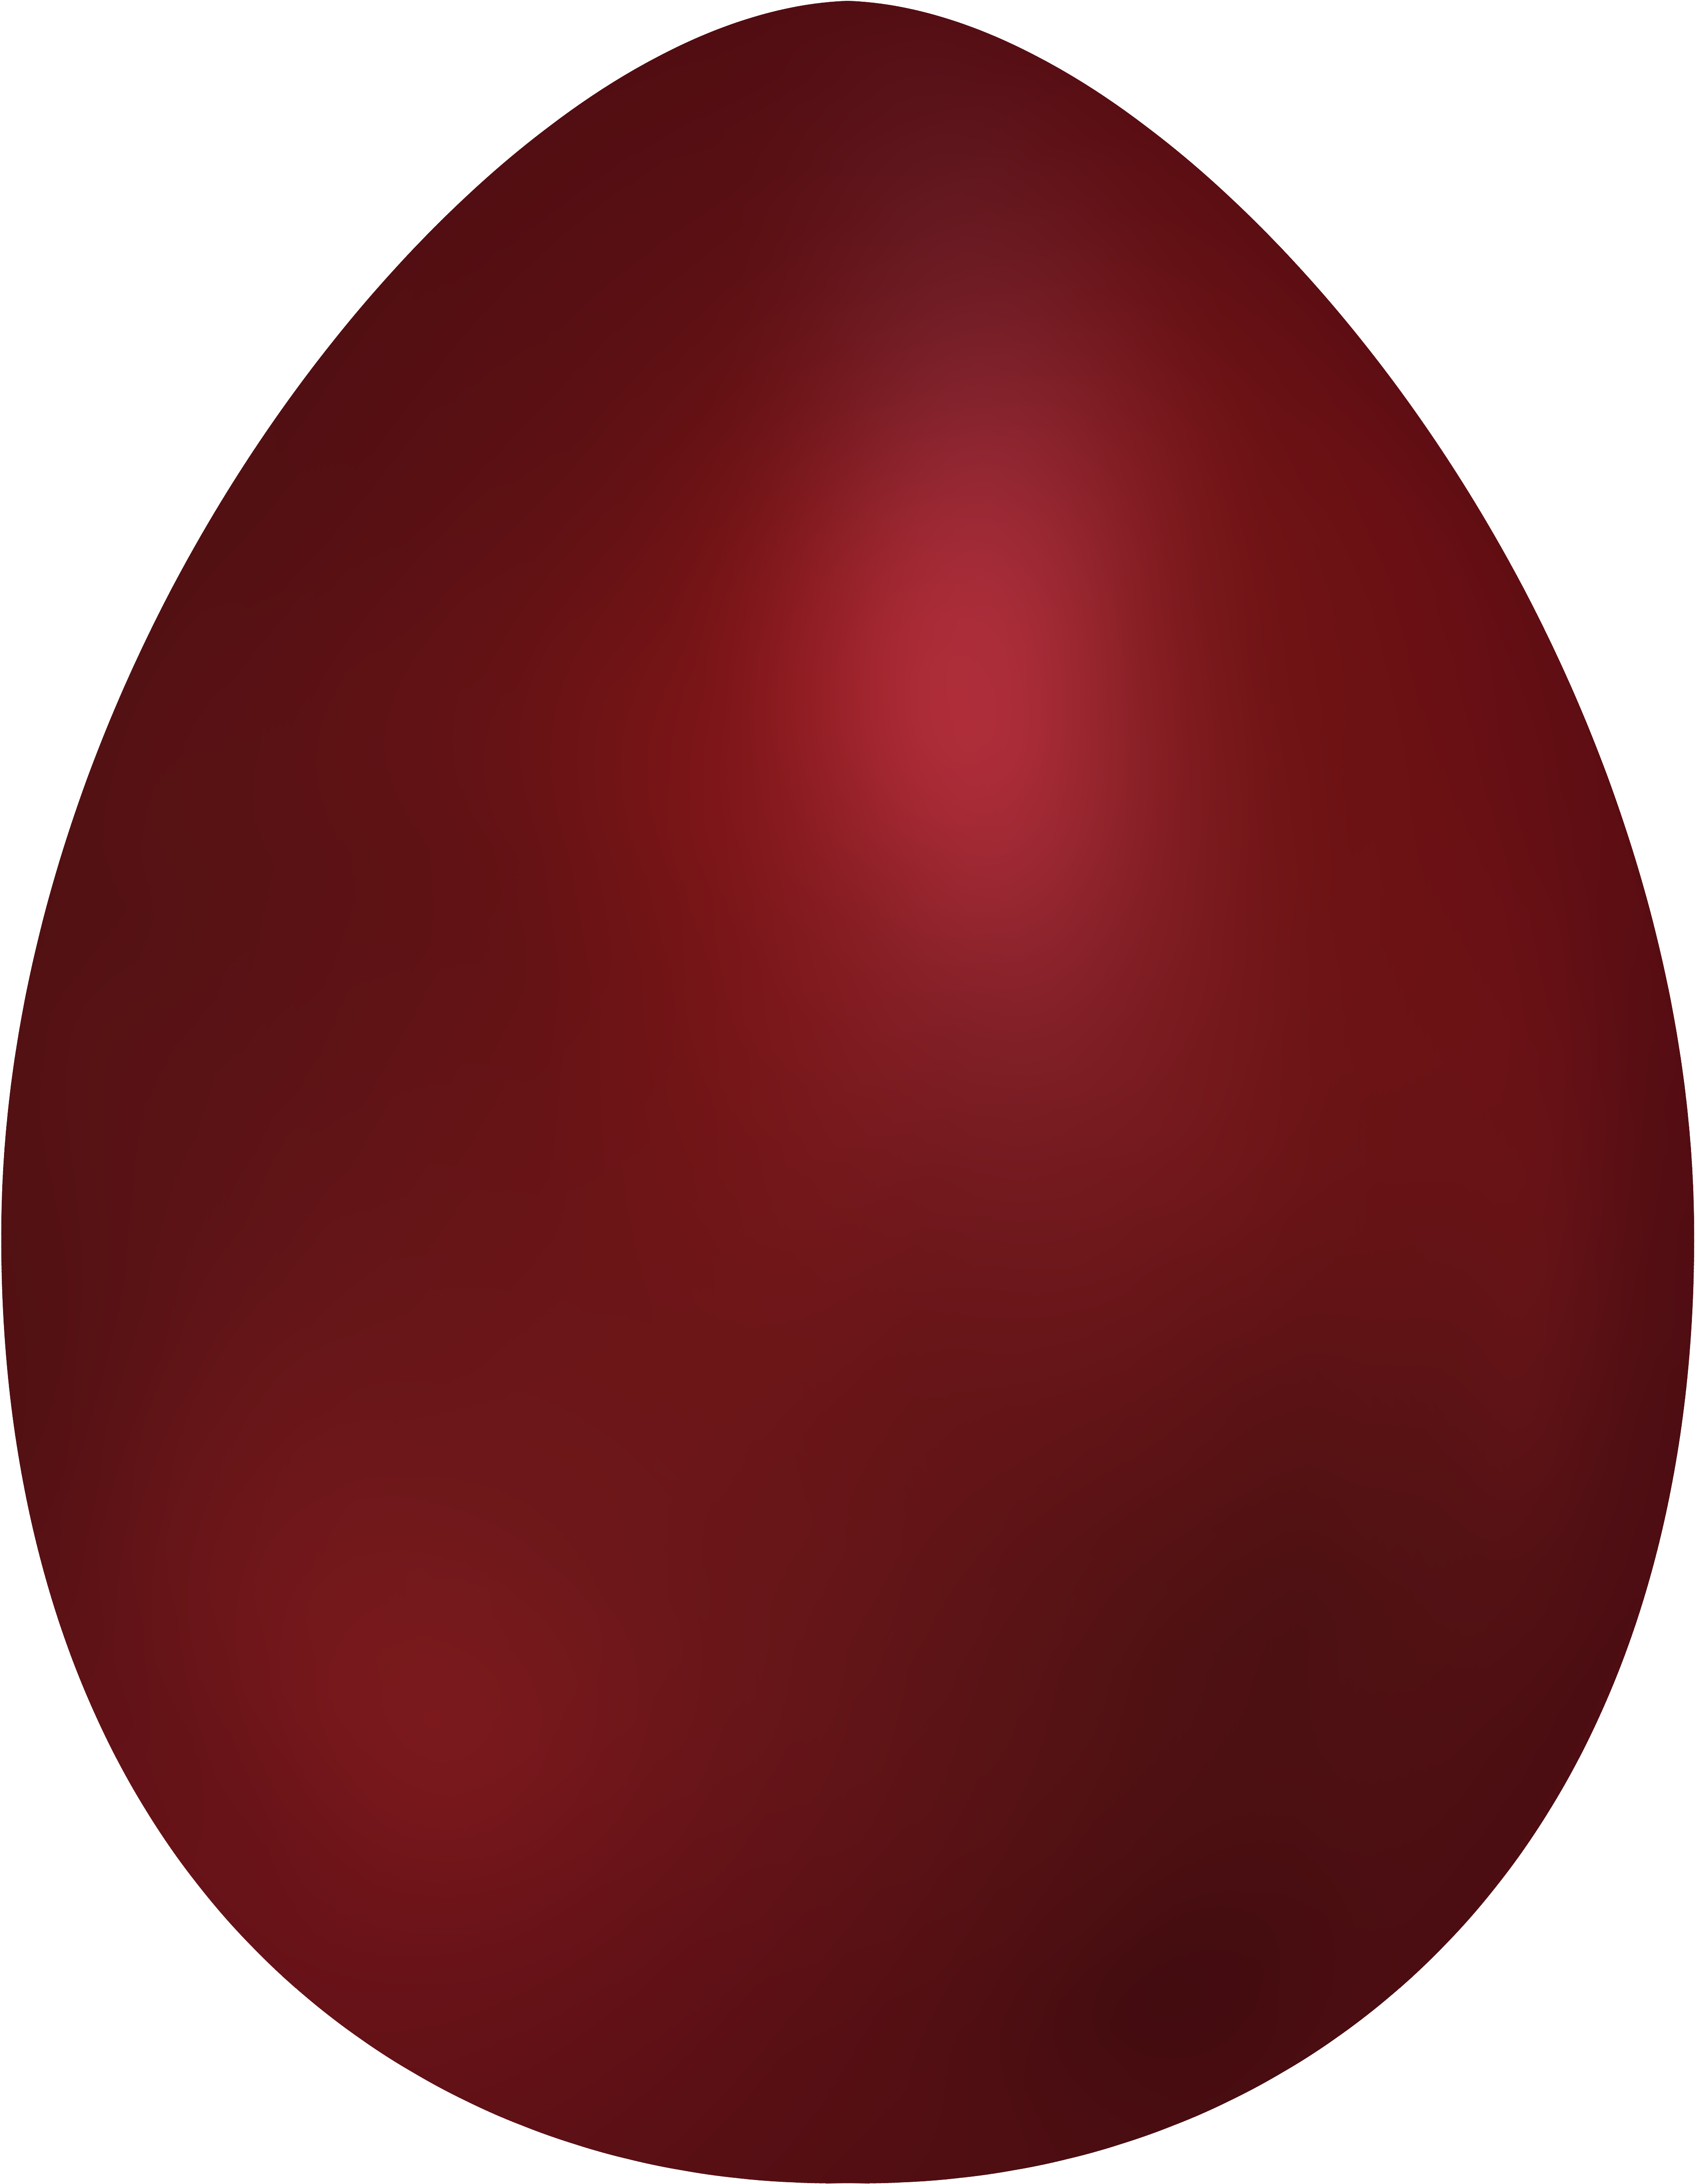 Dark Red Easter Egg Png Clip Art - Gloucester Road Tube Station Transparent Png (3879x5000), Png Download